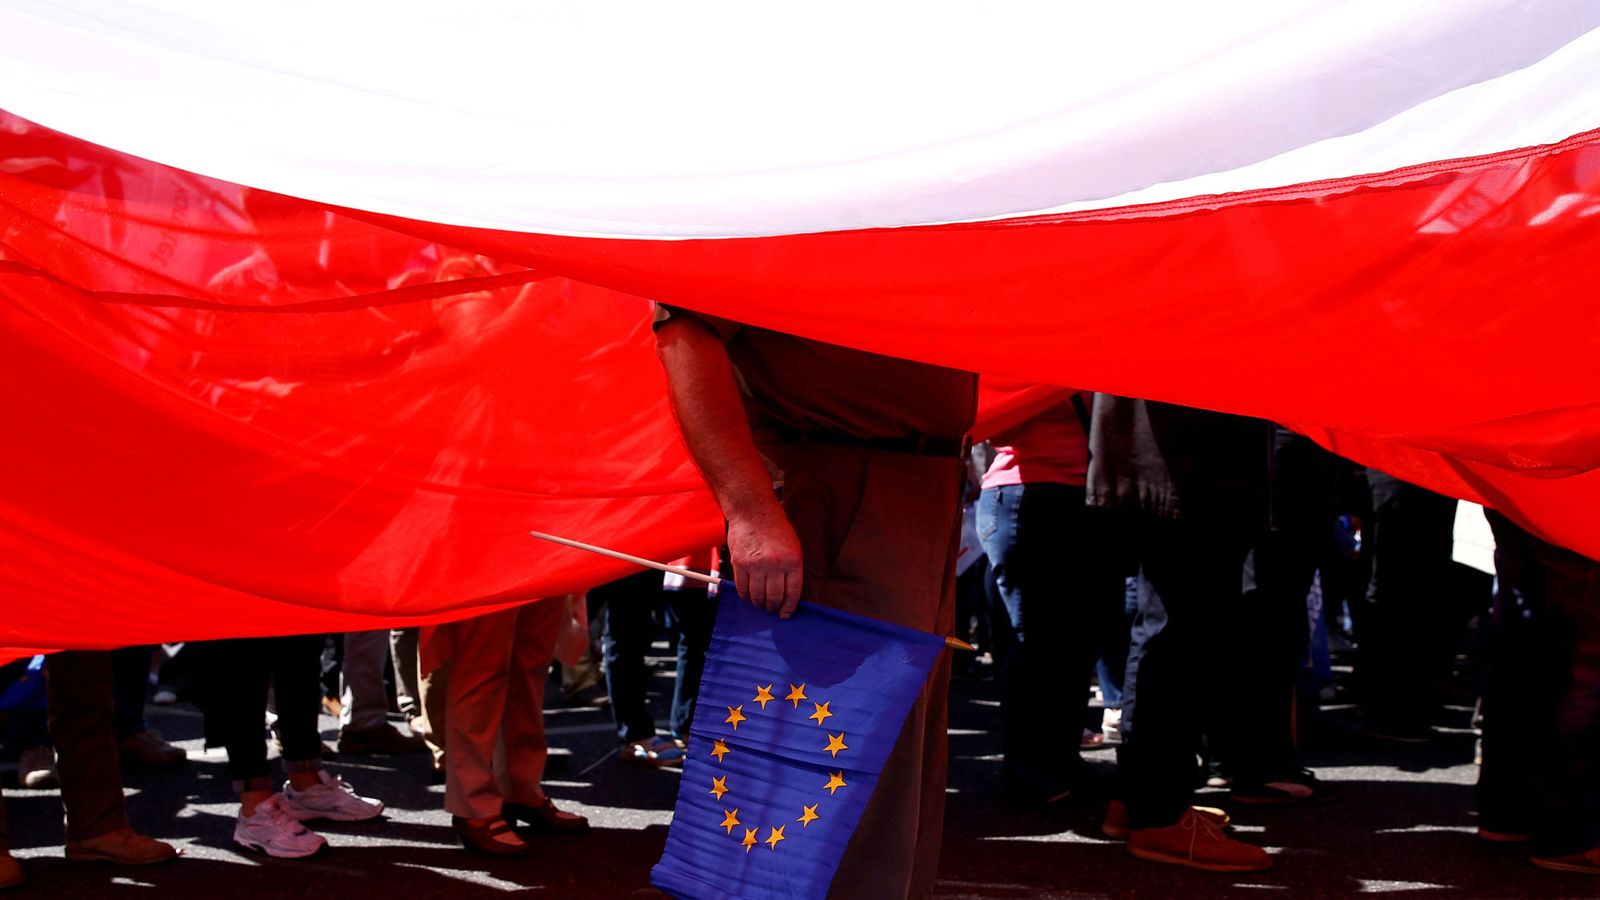 Foto: Un hombre sujeta una bandera de la Unión Europea debajo de una gigantesca bandera polaca. (Reuters)